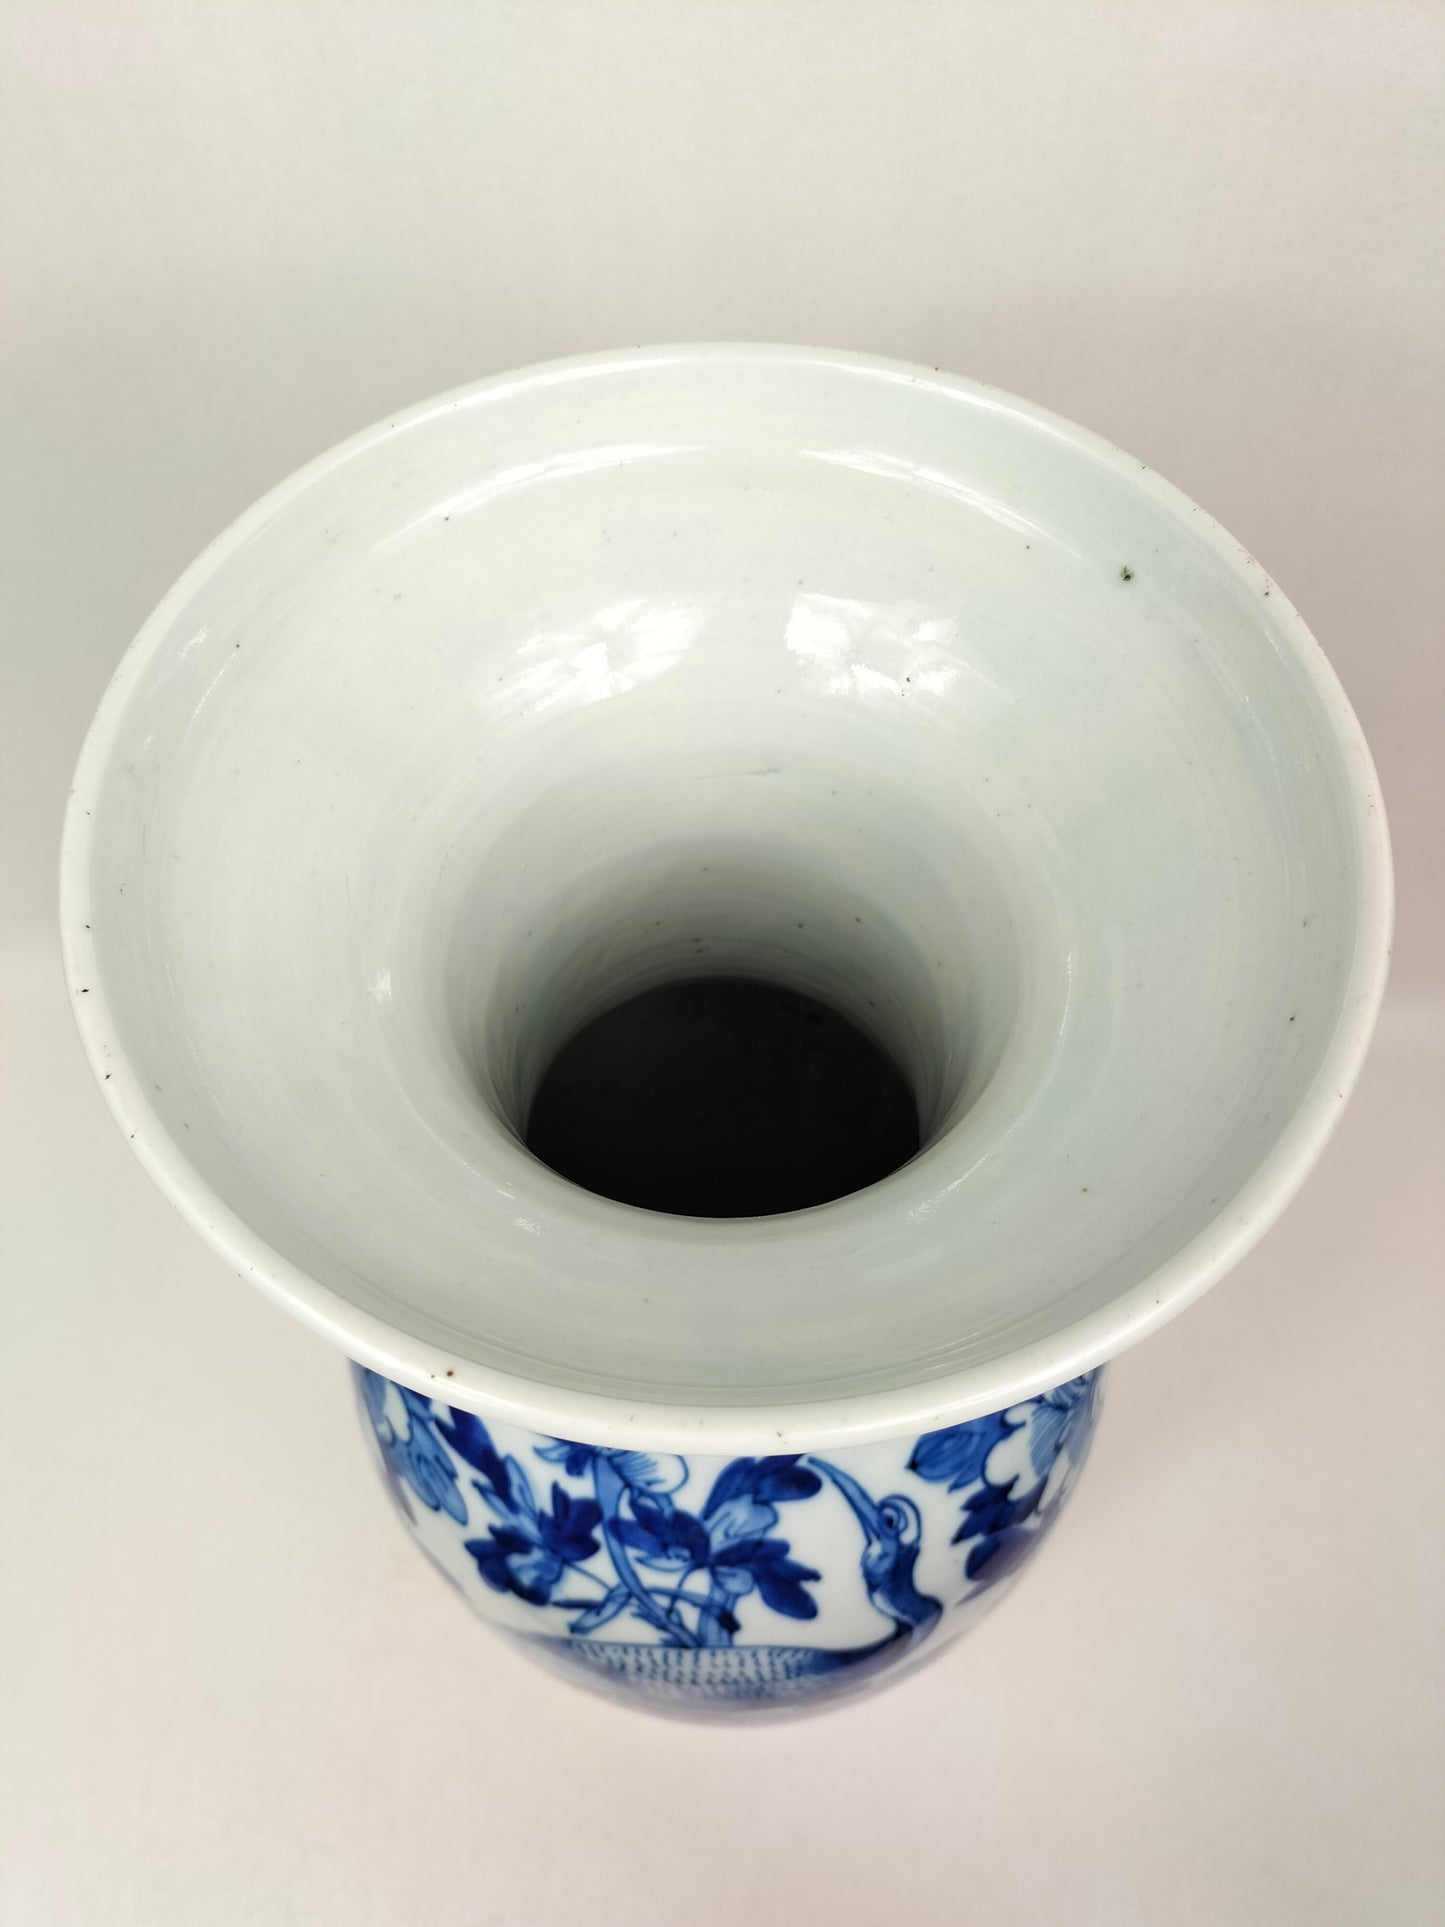 大型古董中国花瓶，饰有鹤和花朵//蓝色和白色 - 清朝 - 19 世纪